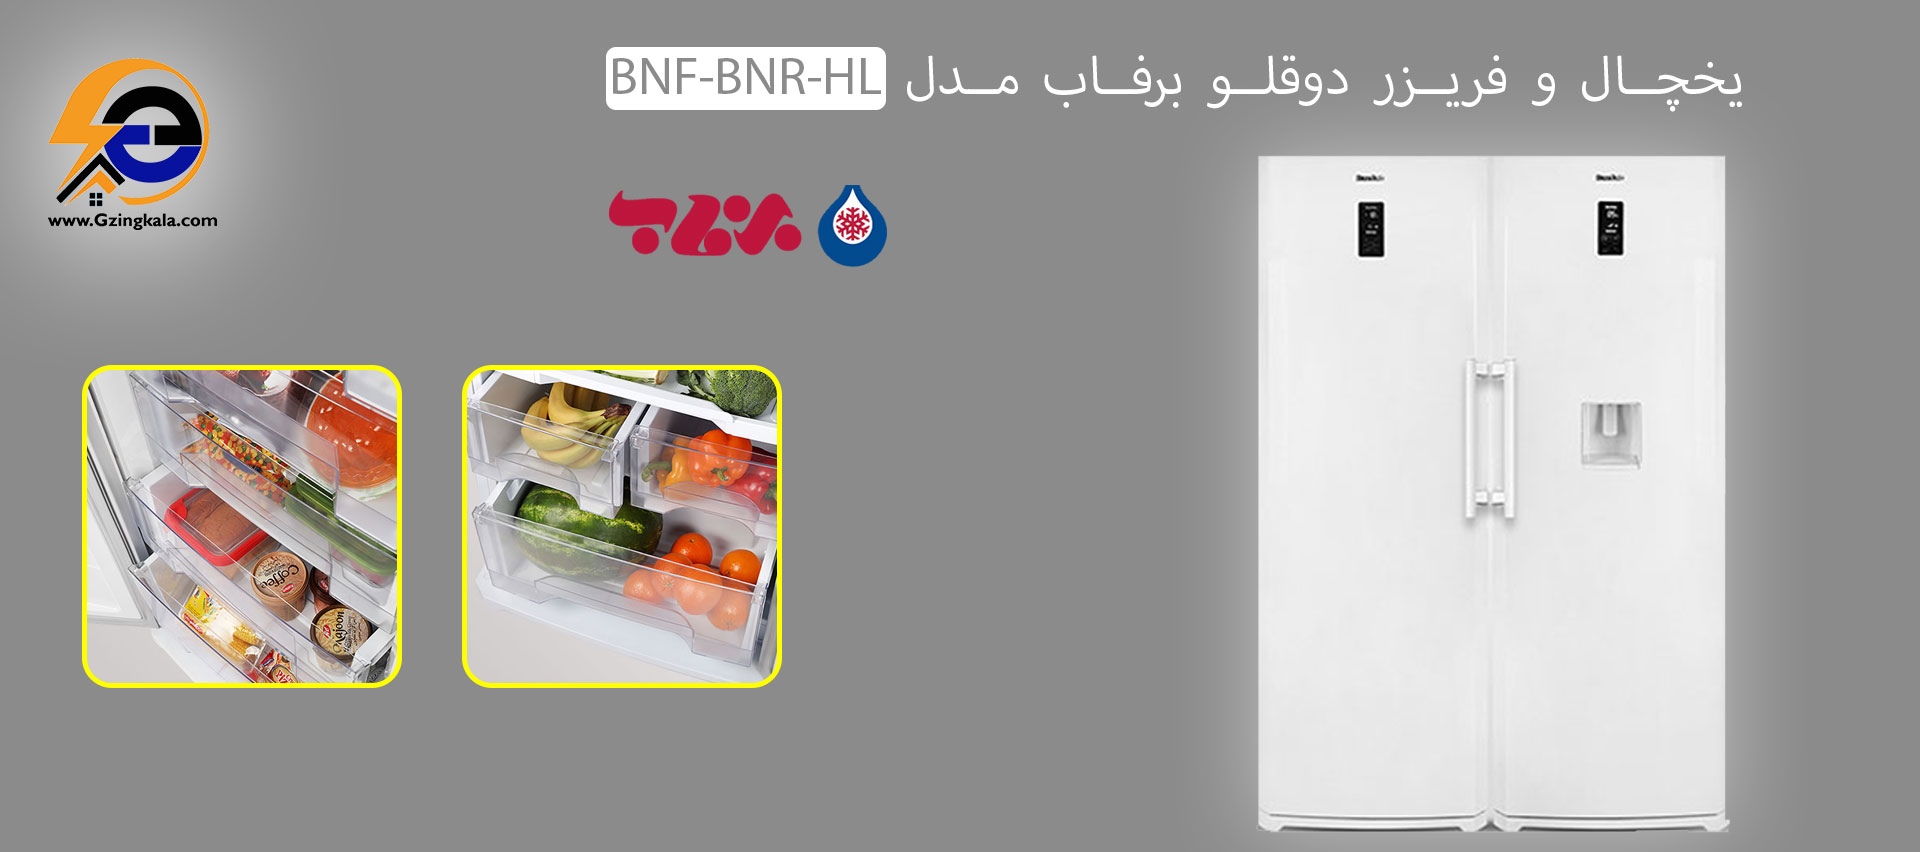 یخچال و فریزر دوقلو برفاب مدل BNF-BNR-HL